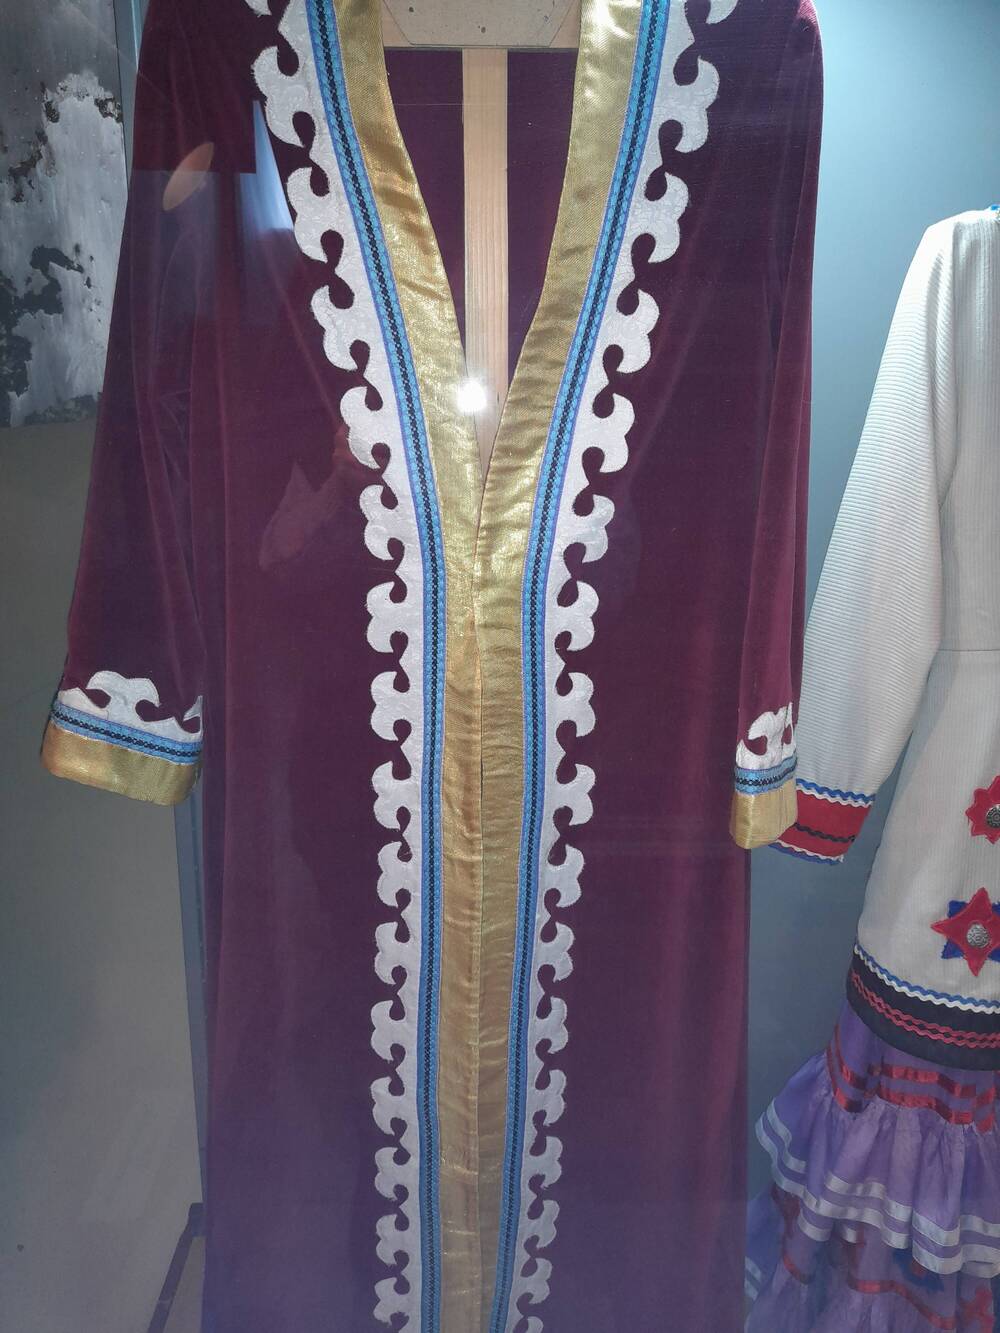 Зилян башкирский мужской из бархата бордового цвета с каймой, по краям желтого цвета, орнаментом белого, синего цветов